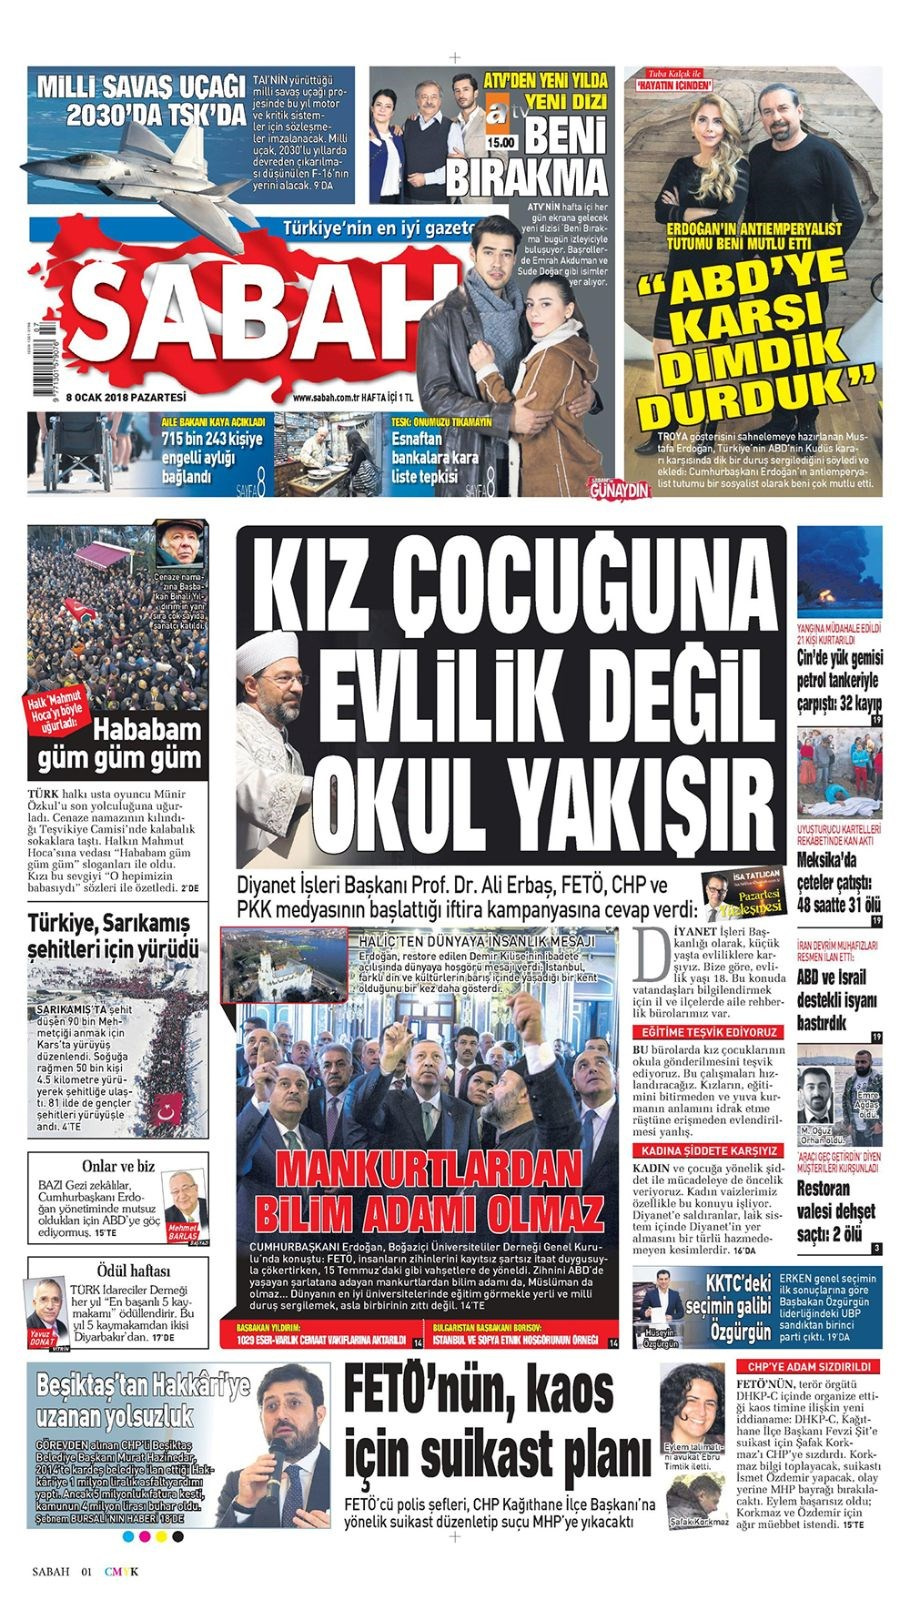 Gazete manşetleri Sözcü - Fanatik - Hürriyet 8 Ocak 2018